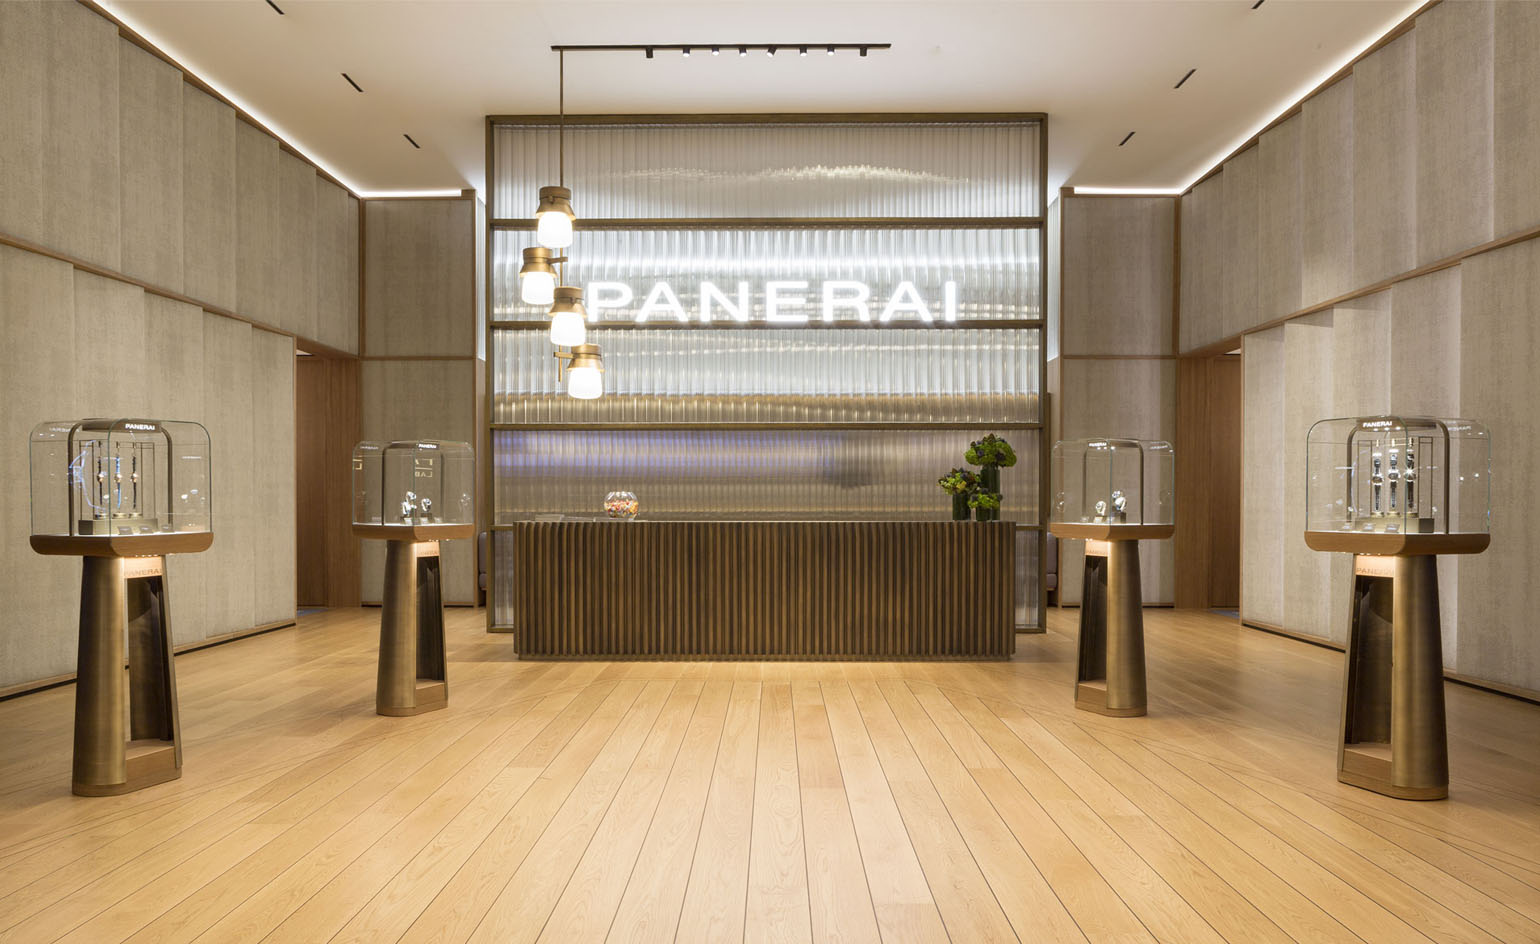 Patricia Urquiola designs Officine Panerai in New York